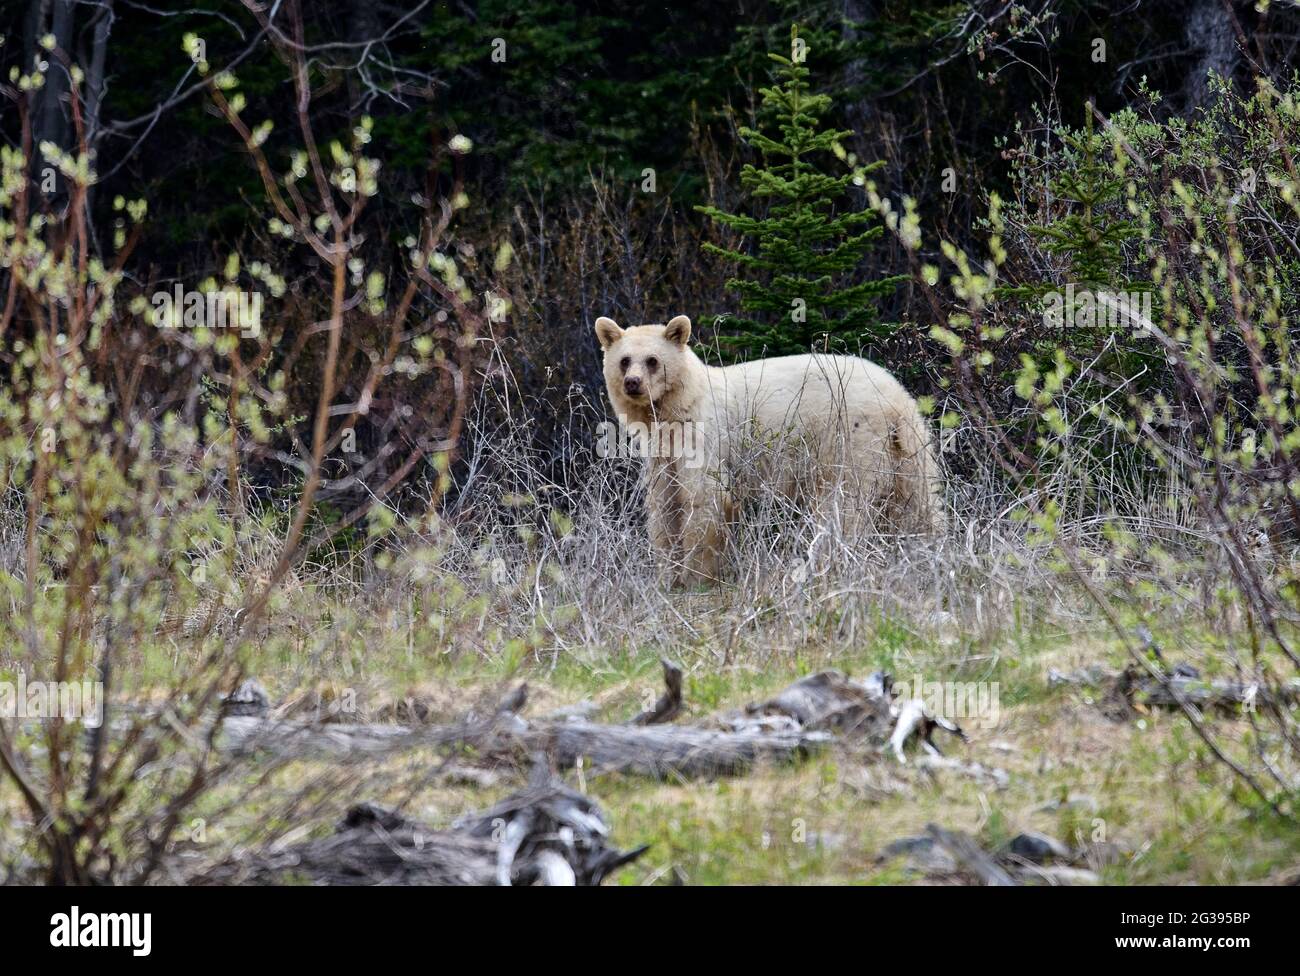 Very rare white mutation of American black bear (Ursus americanus), Spary Lakes Provincial Park, Kananaskis Country, Alberta. Stock Photo